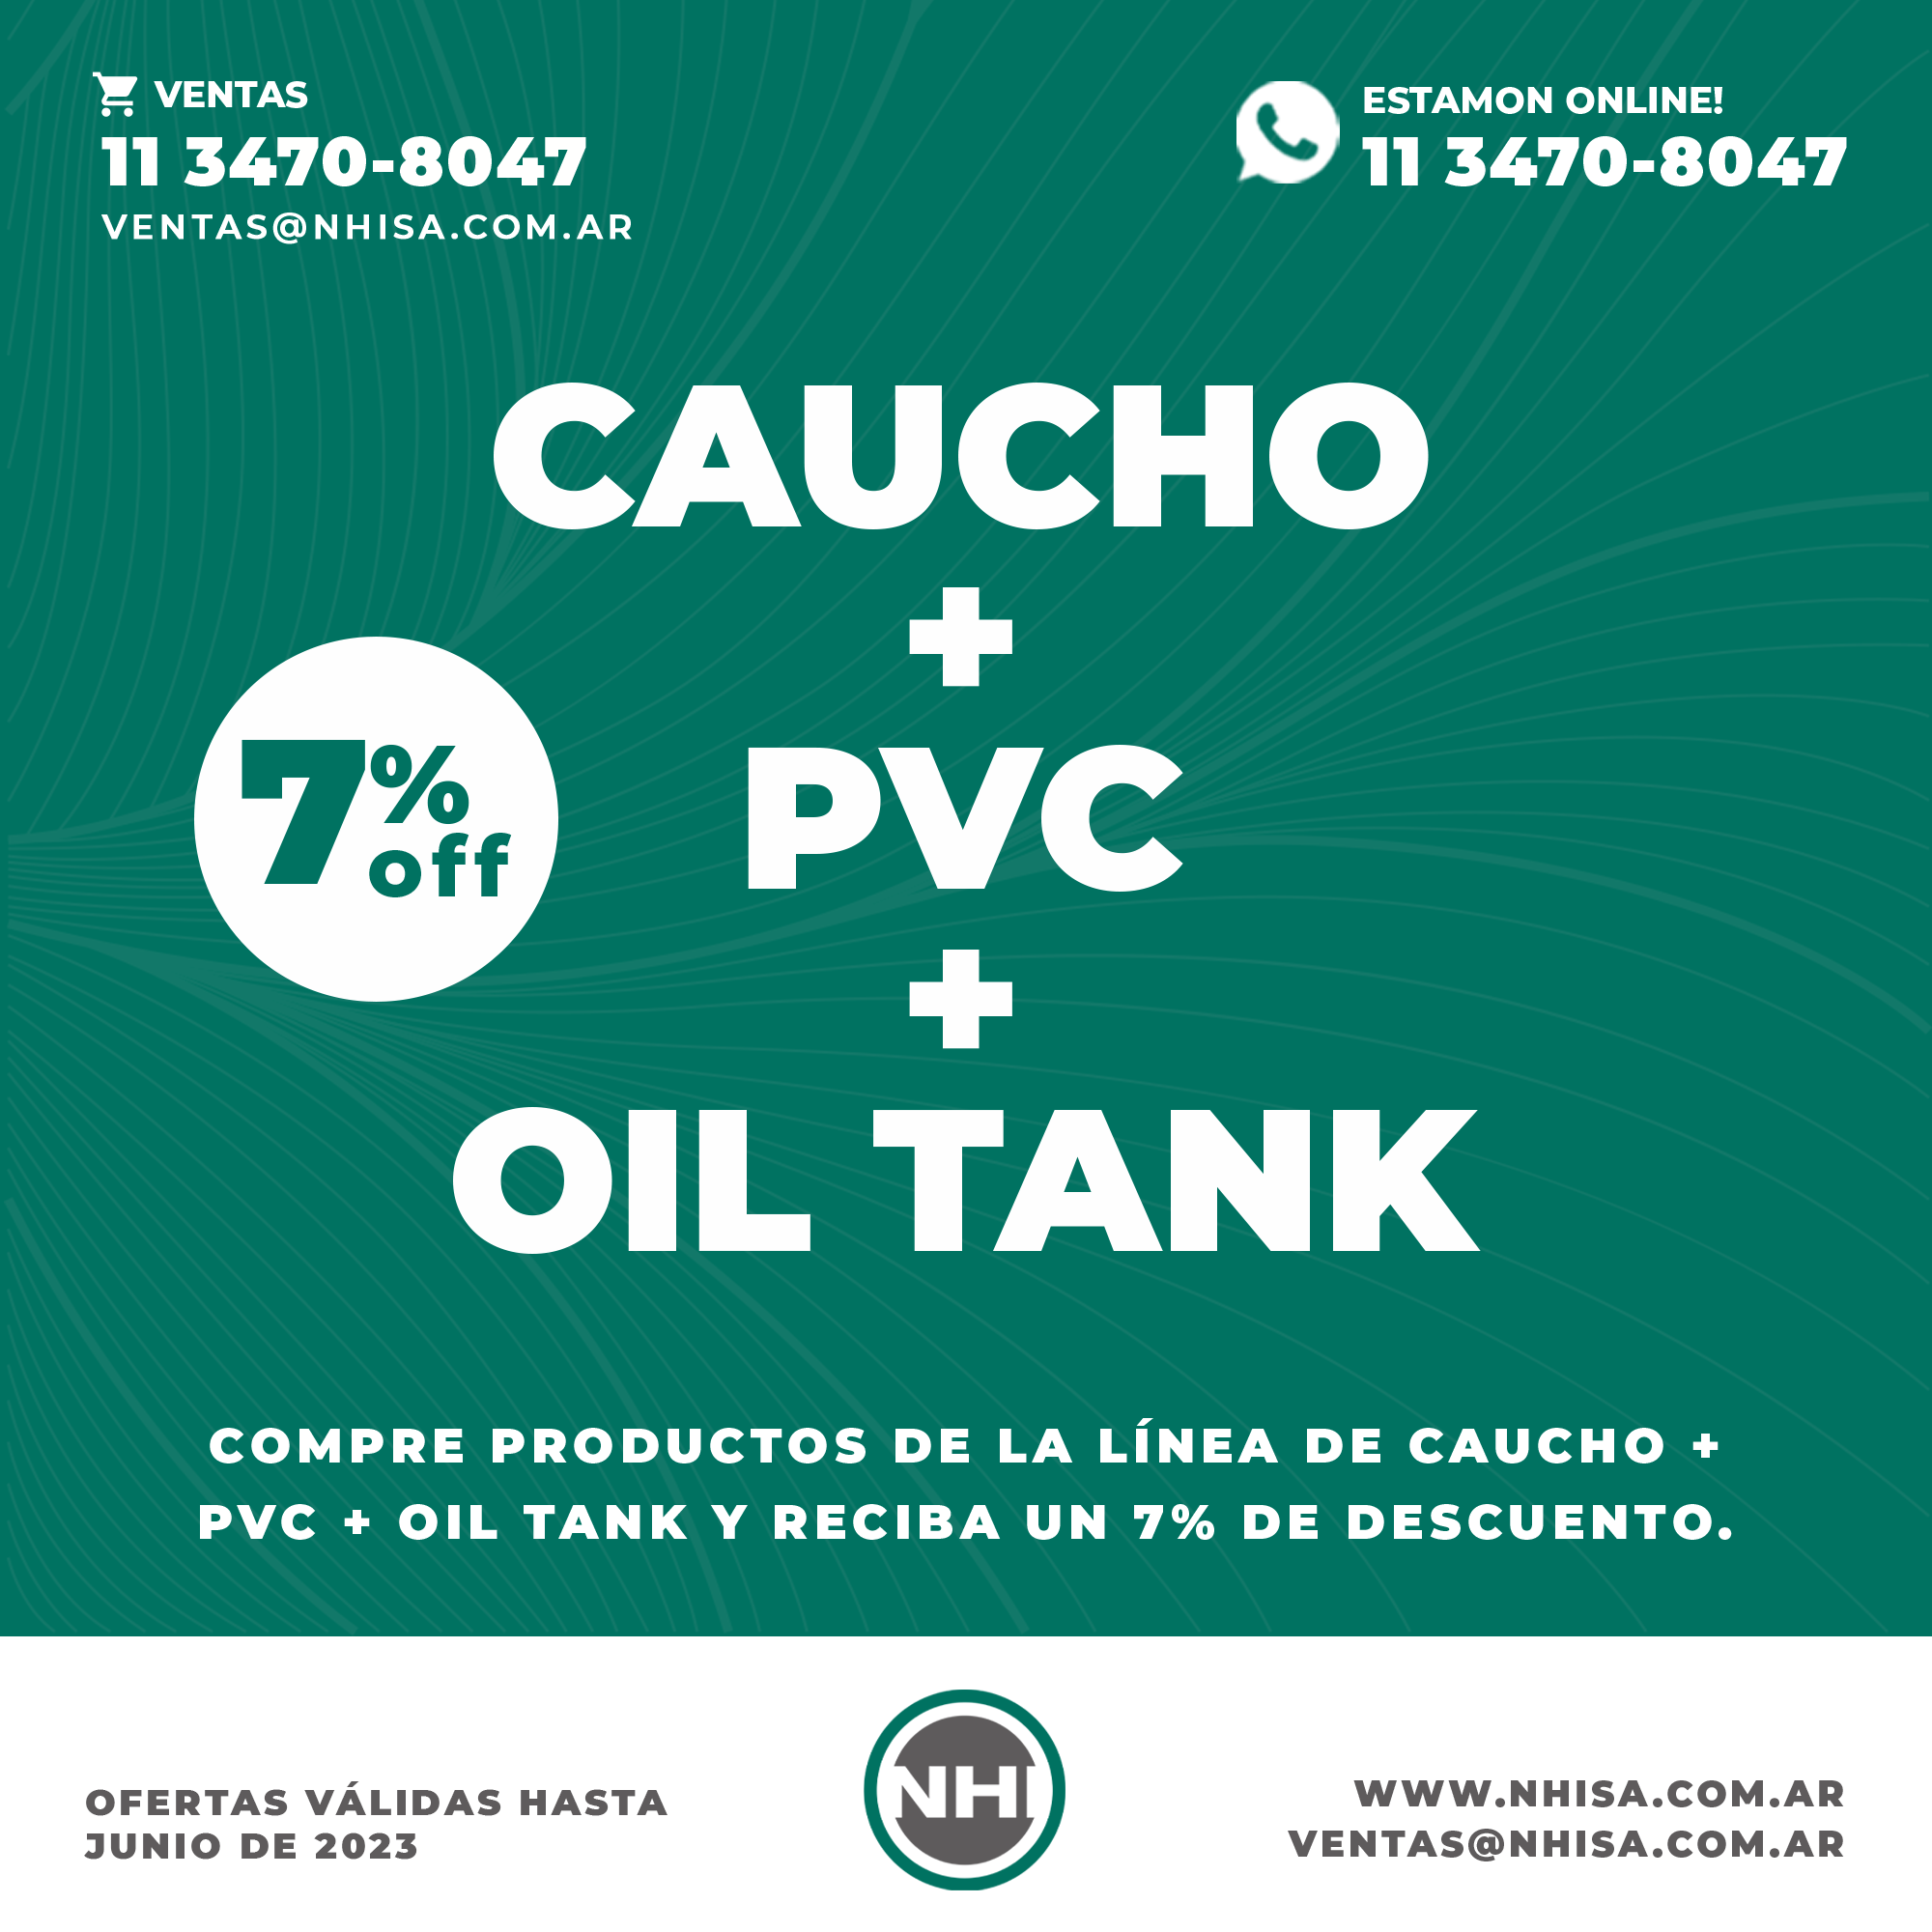 Caucho + PVC + Oil Tank